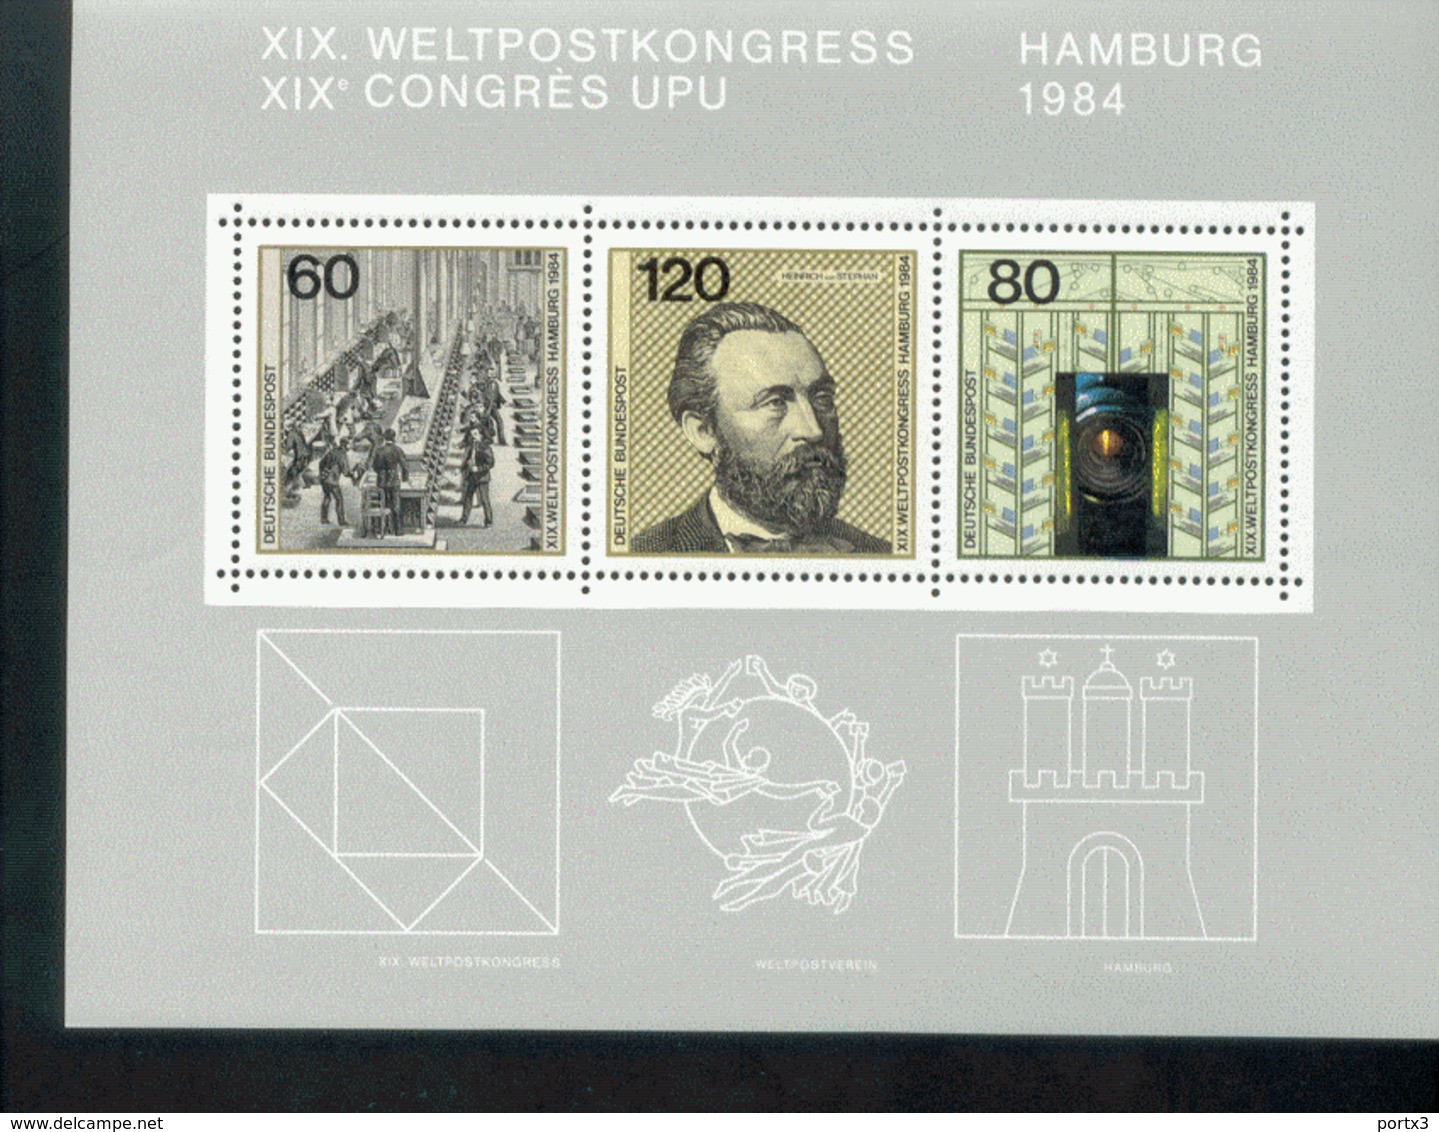 Bund Block 19 Weltpostkongress Heinrich Von Stephan 5 Stück / Items Postfrisch MNH ** Neuf - 1981-1990